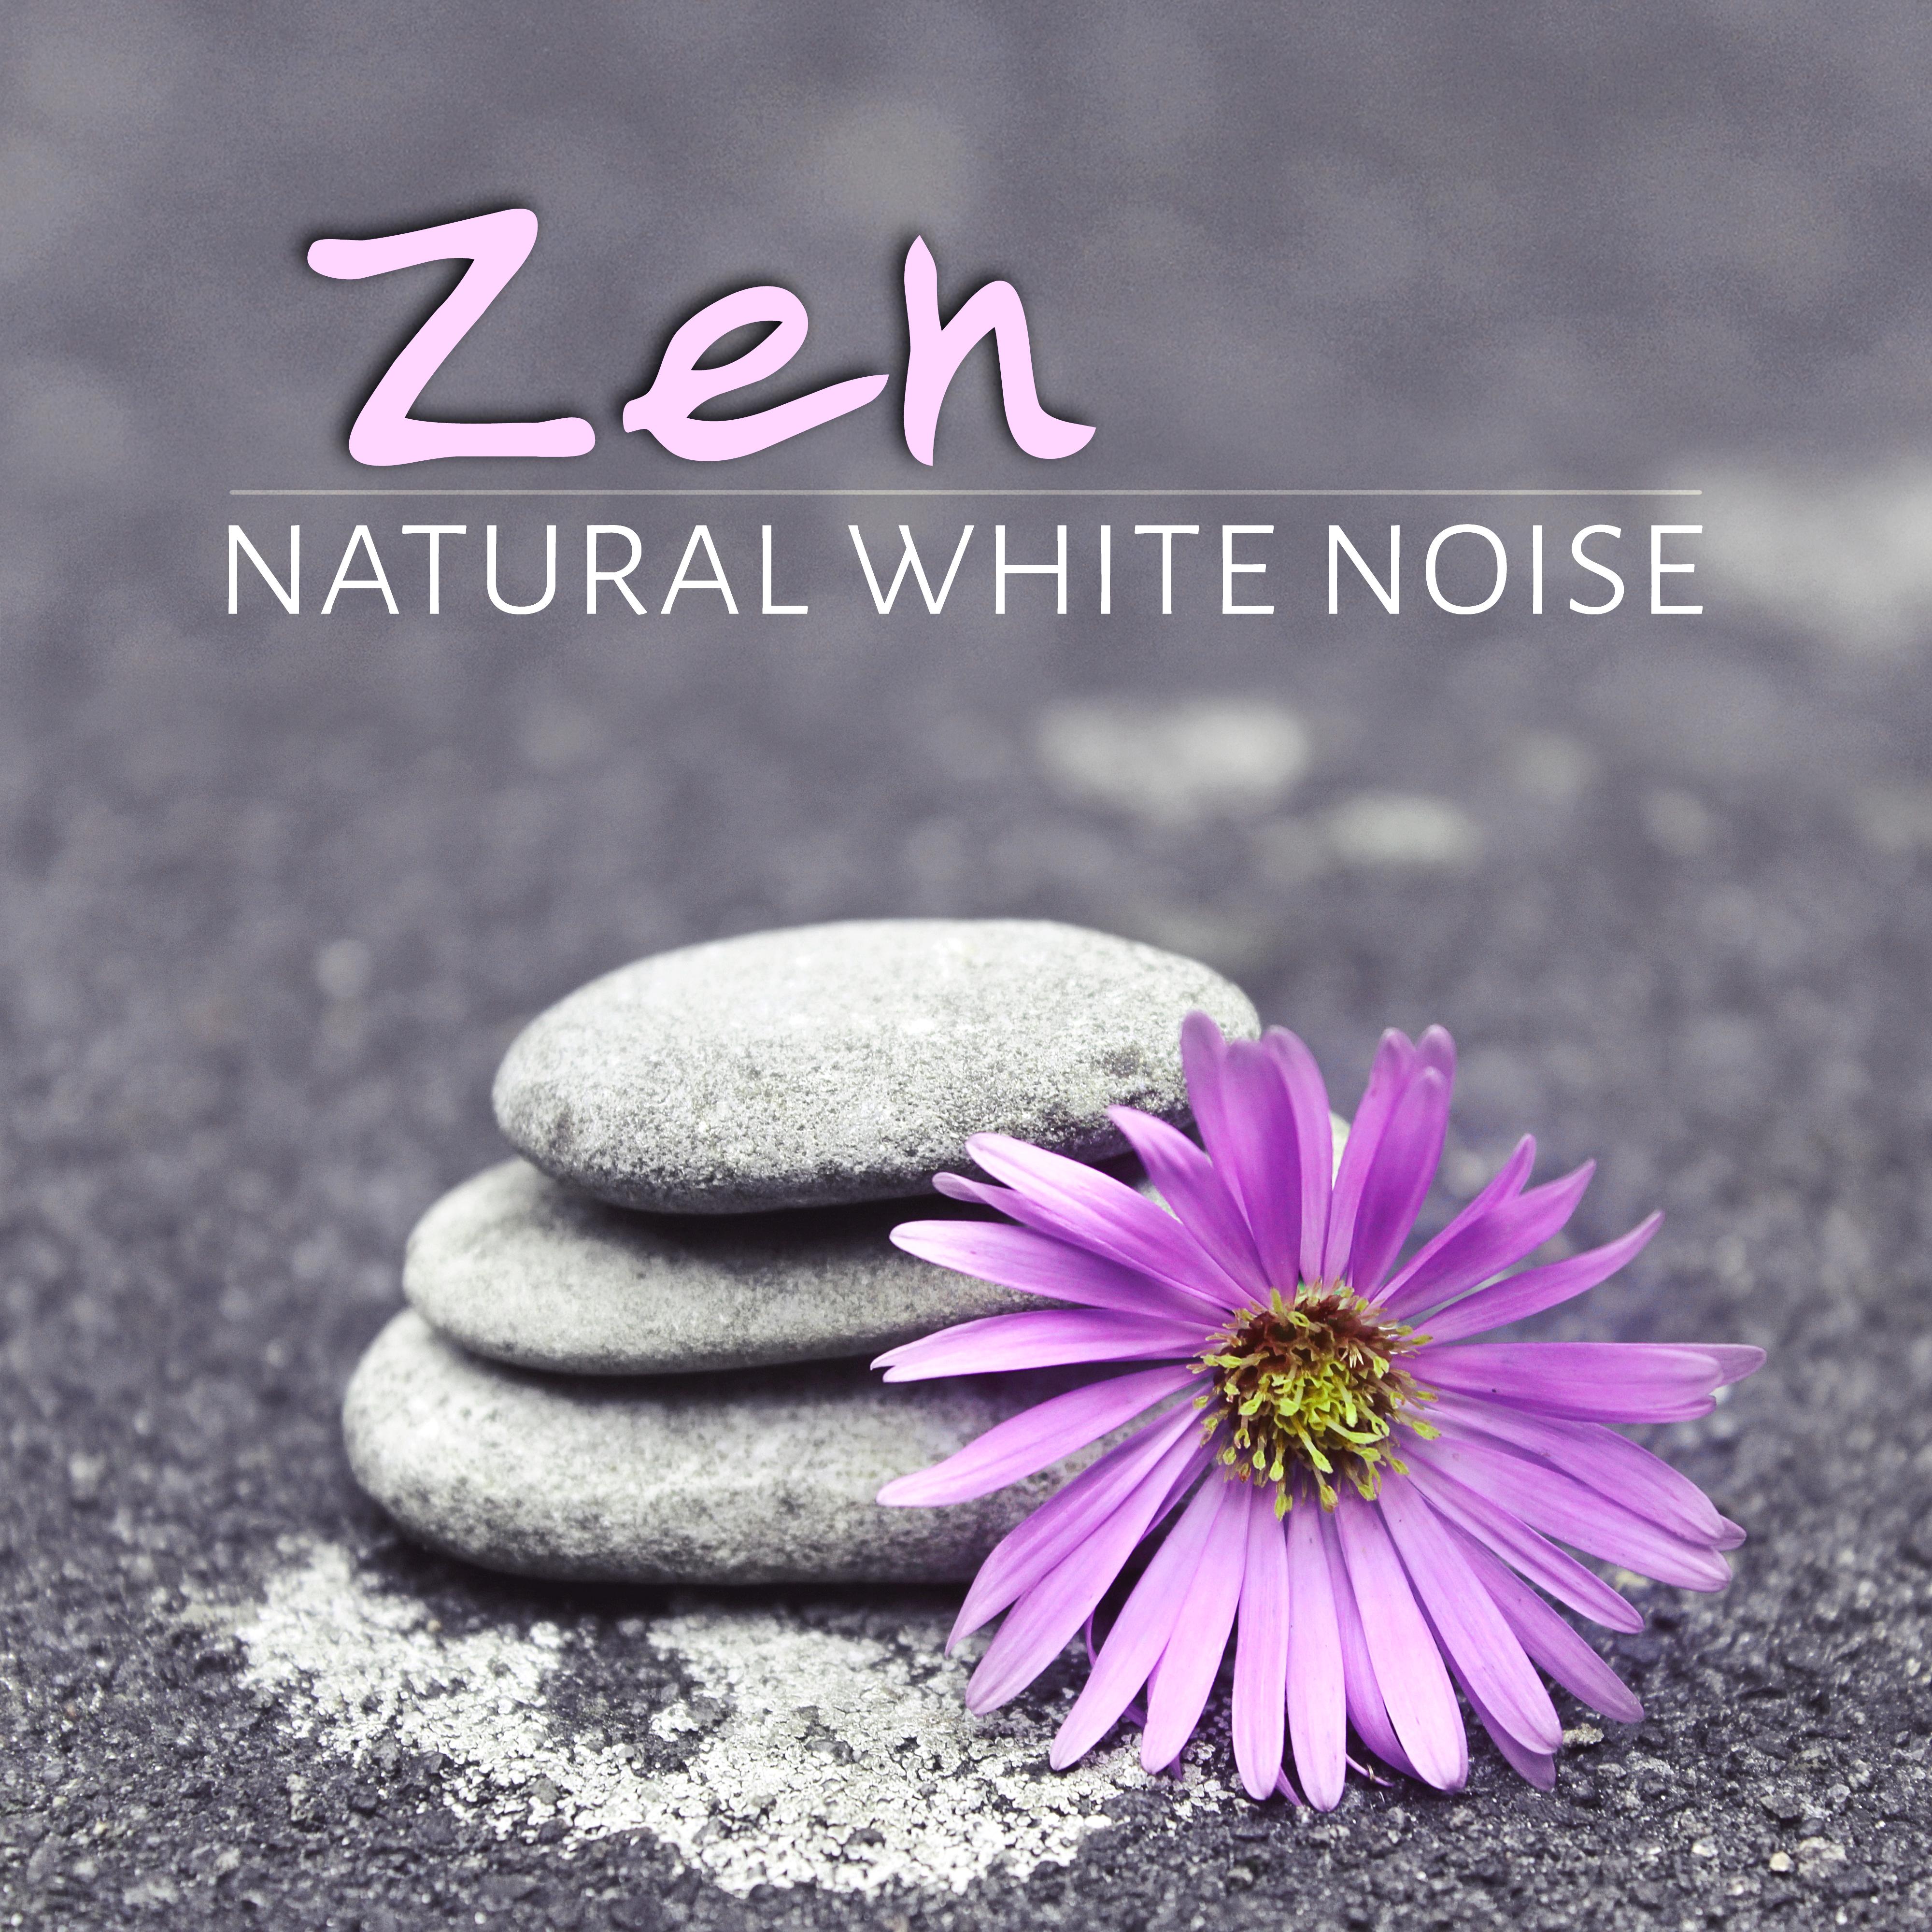 Zen Natural White Noise